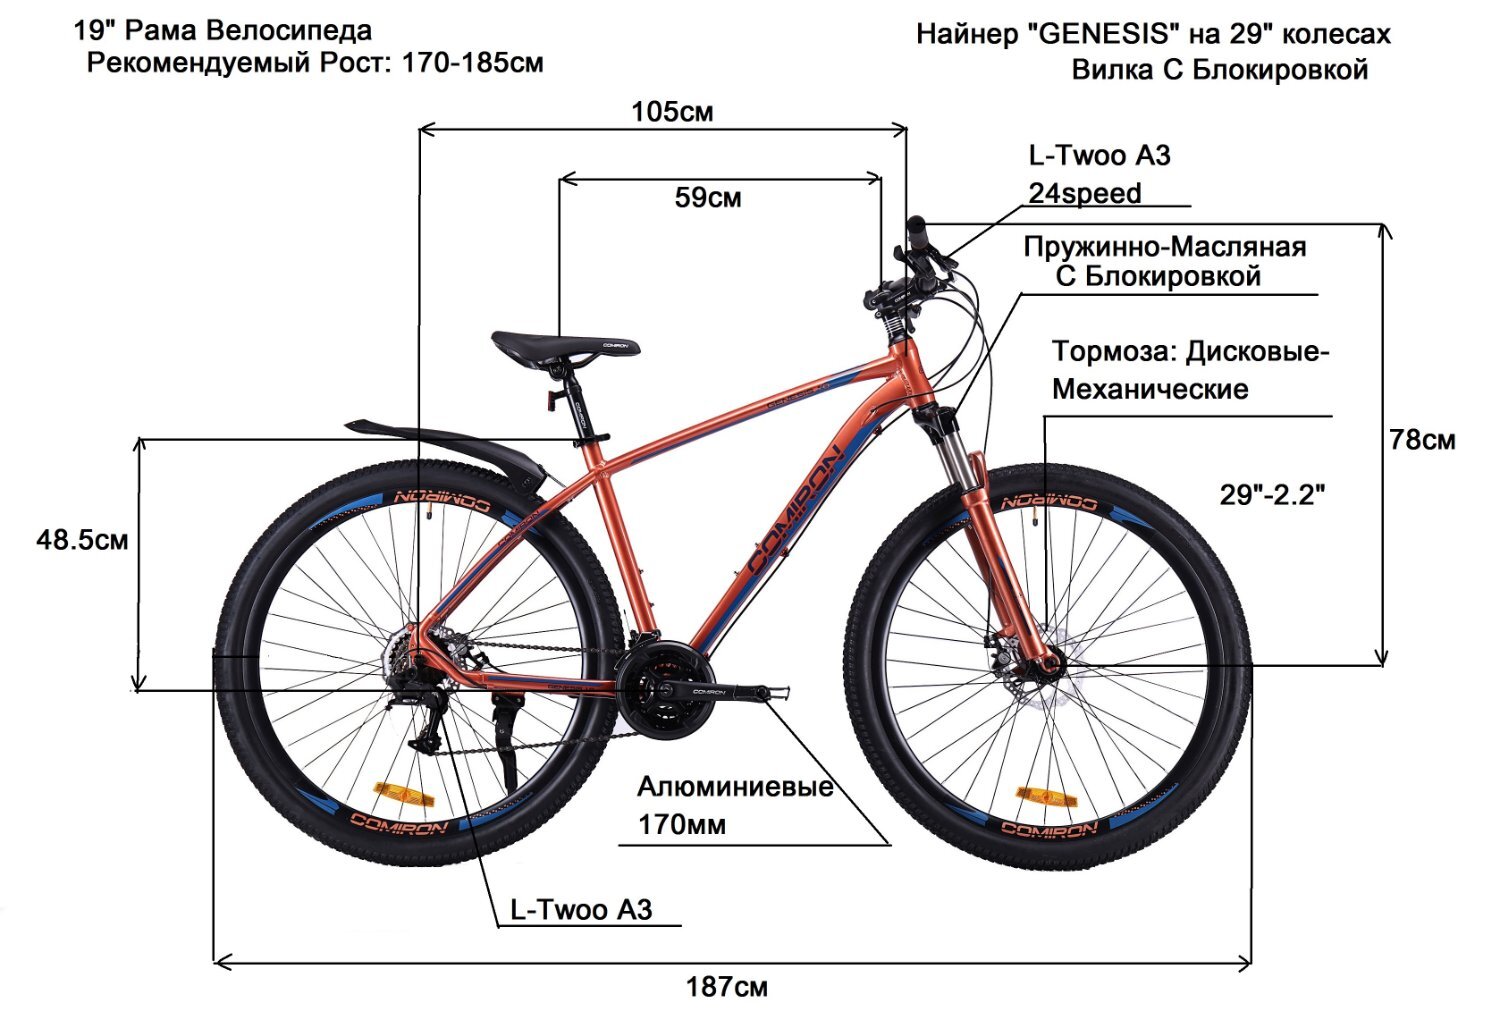 Как определить размер колеса велосипеда. Велосипед 19 рама 29 колеса. Габариты велосипеда. Размер велосипеда. Размер колес скоростного велосипеда.